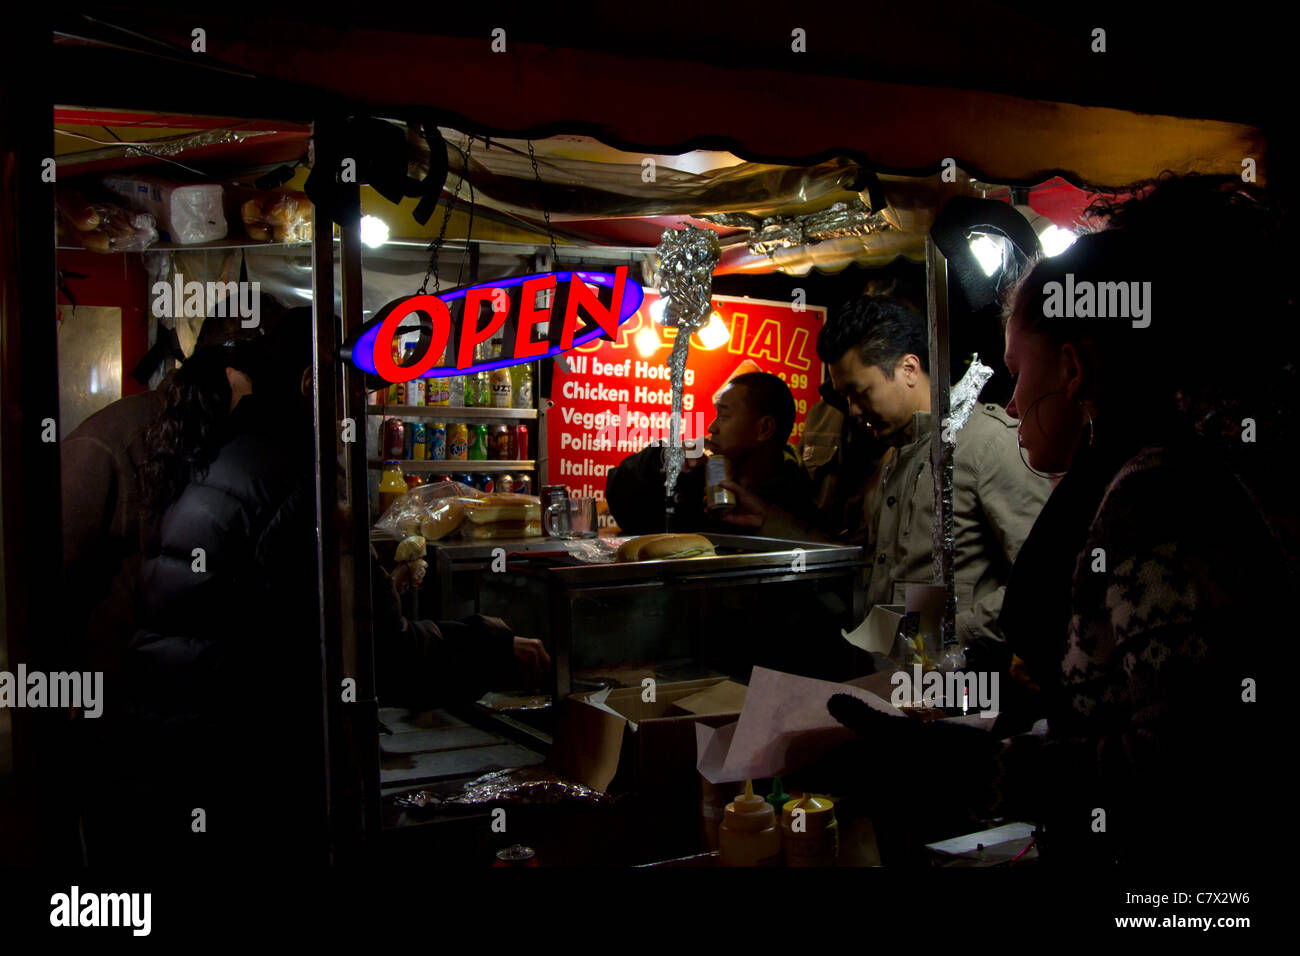 Vendeur de rue de l'alimentation de fin de nuit open sign Banque D'Images